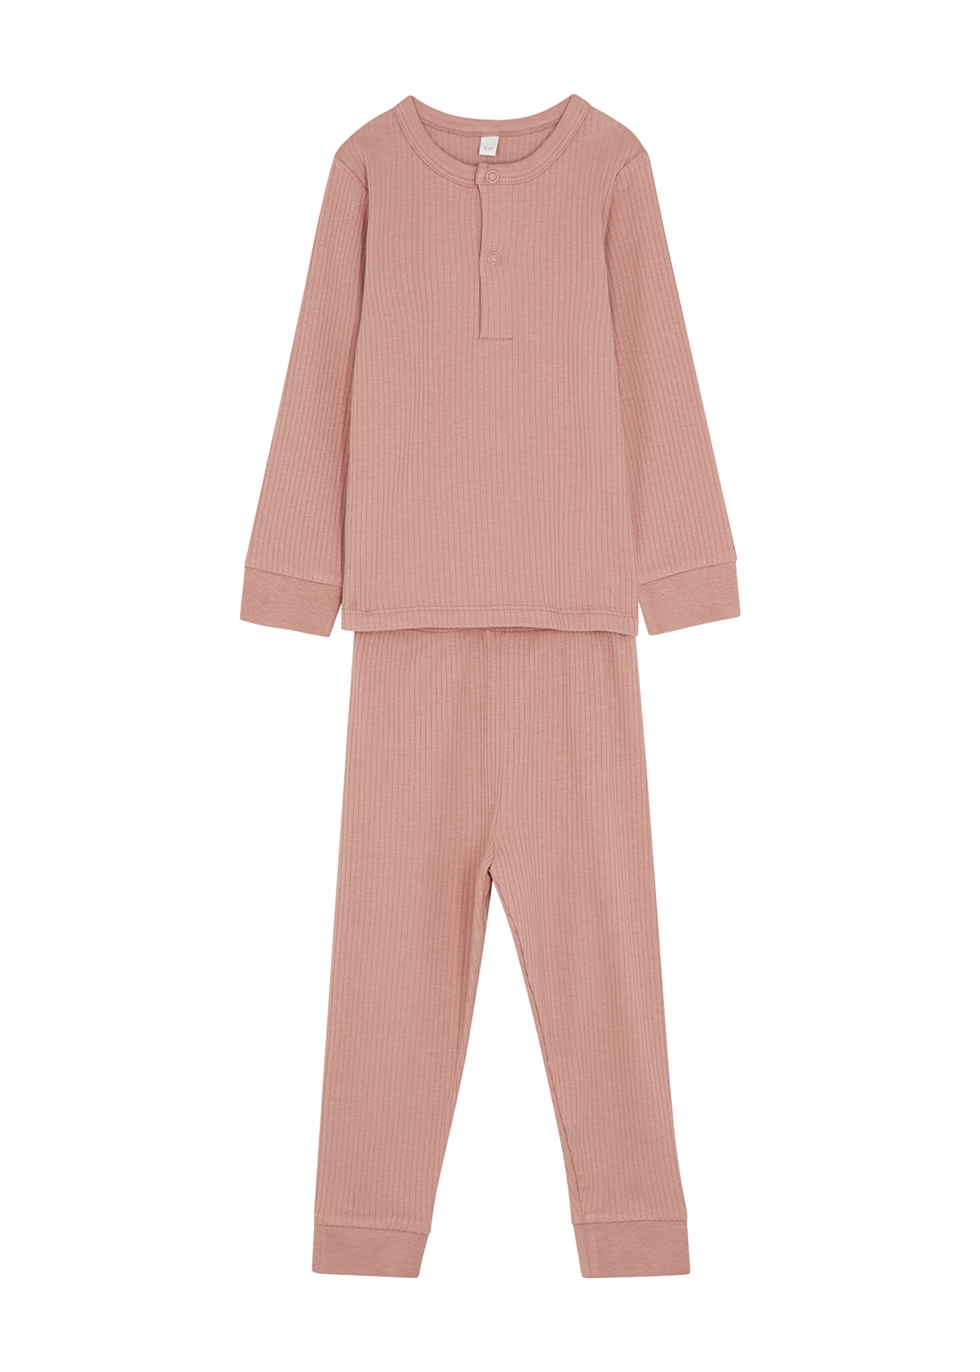 Mori Babies' Rose Ribbed Jersey Pyjama Set